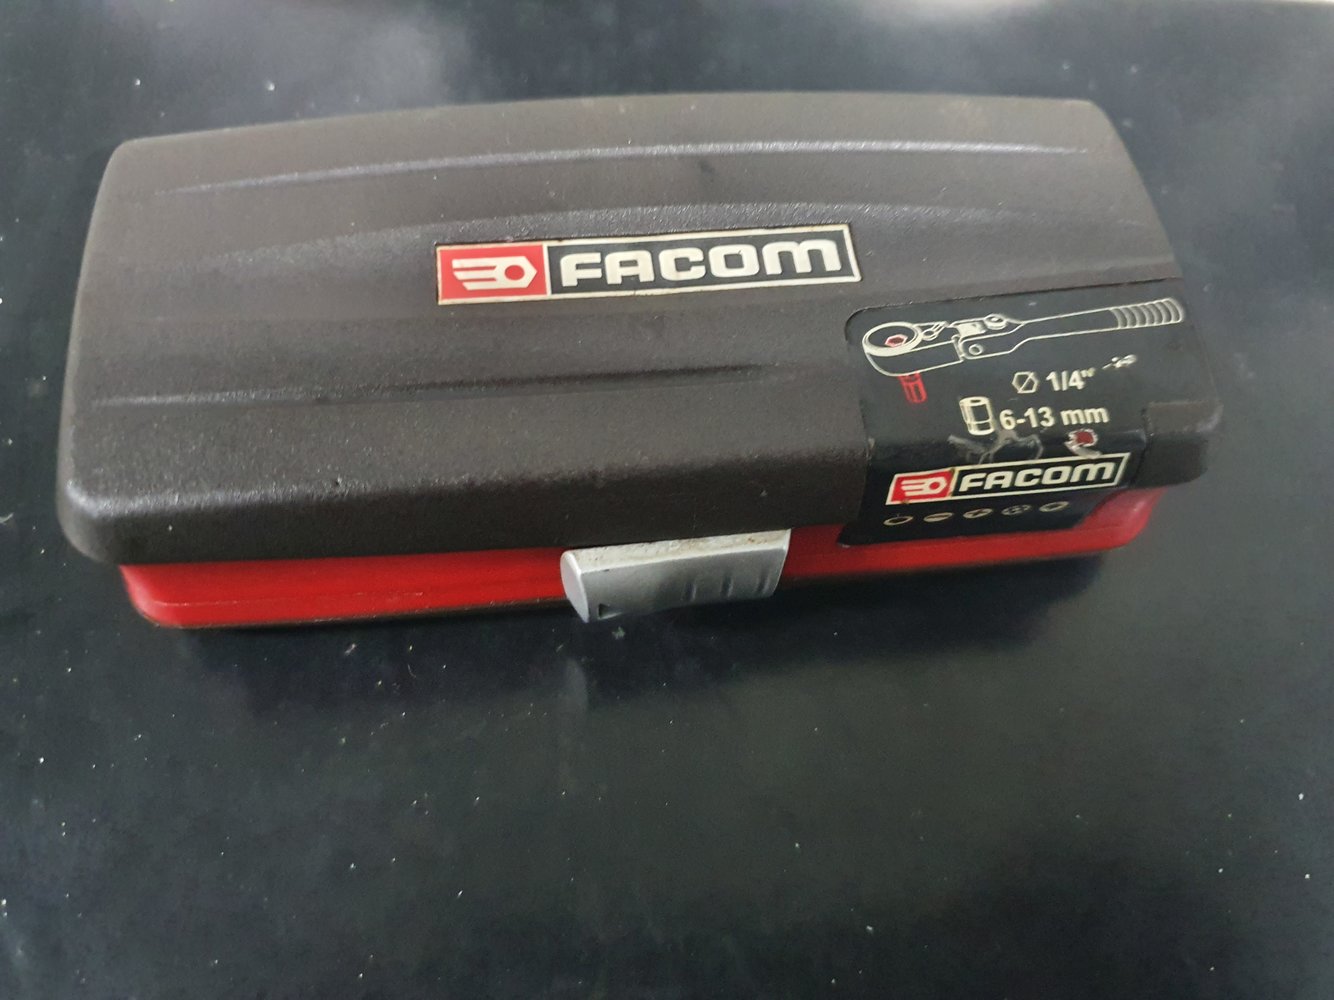 Review - Facom R1 Pico